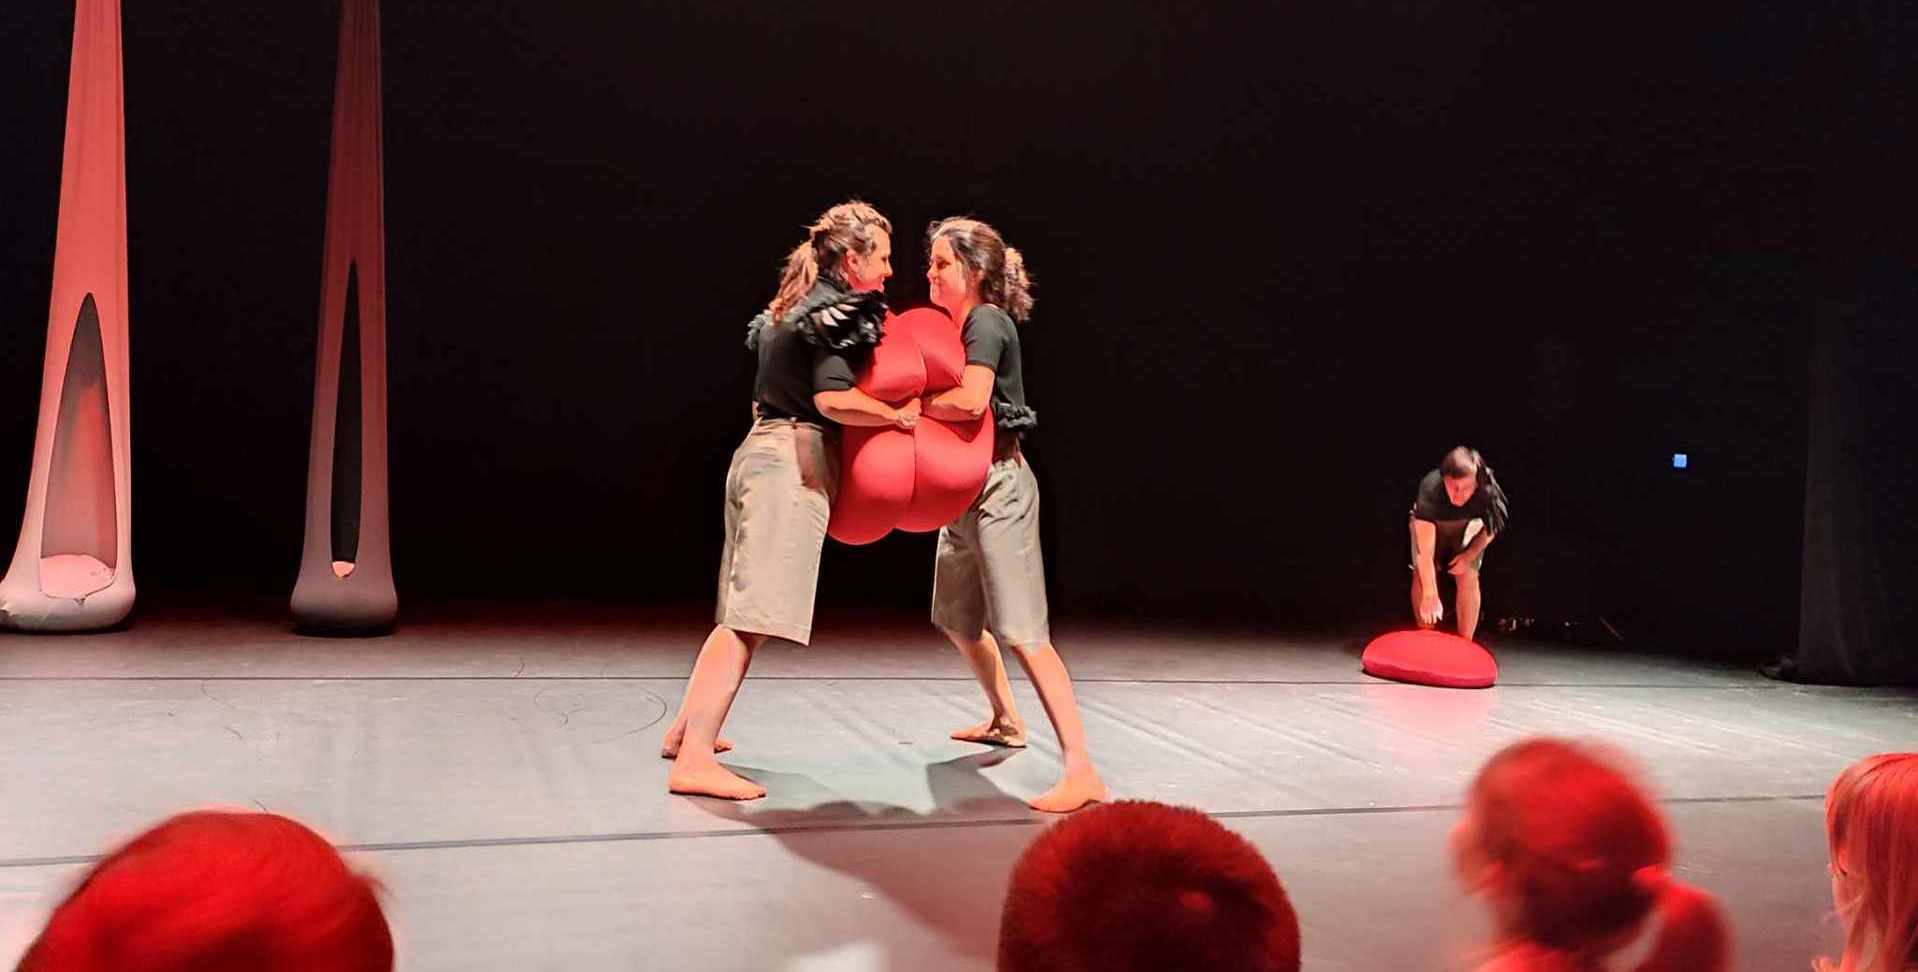 aktorki stoją na scenie i trzymają między sobą czerwoną poduszkę.jpeg